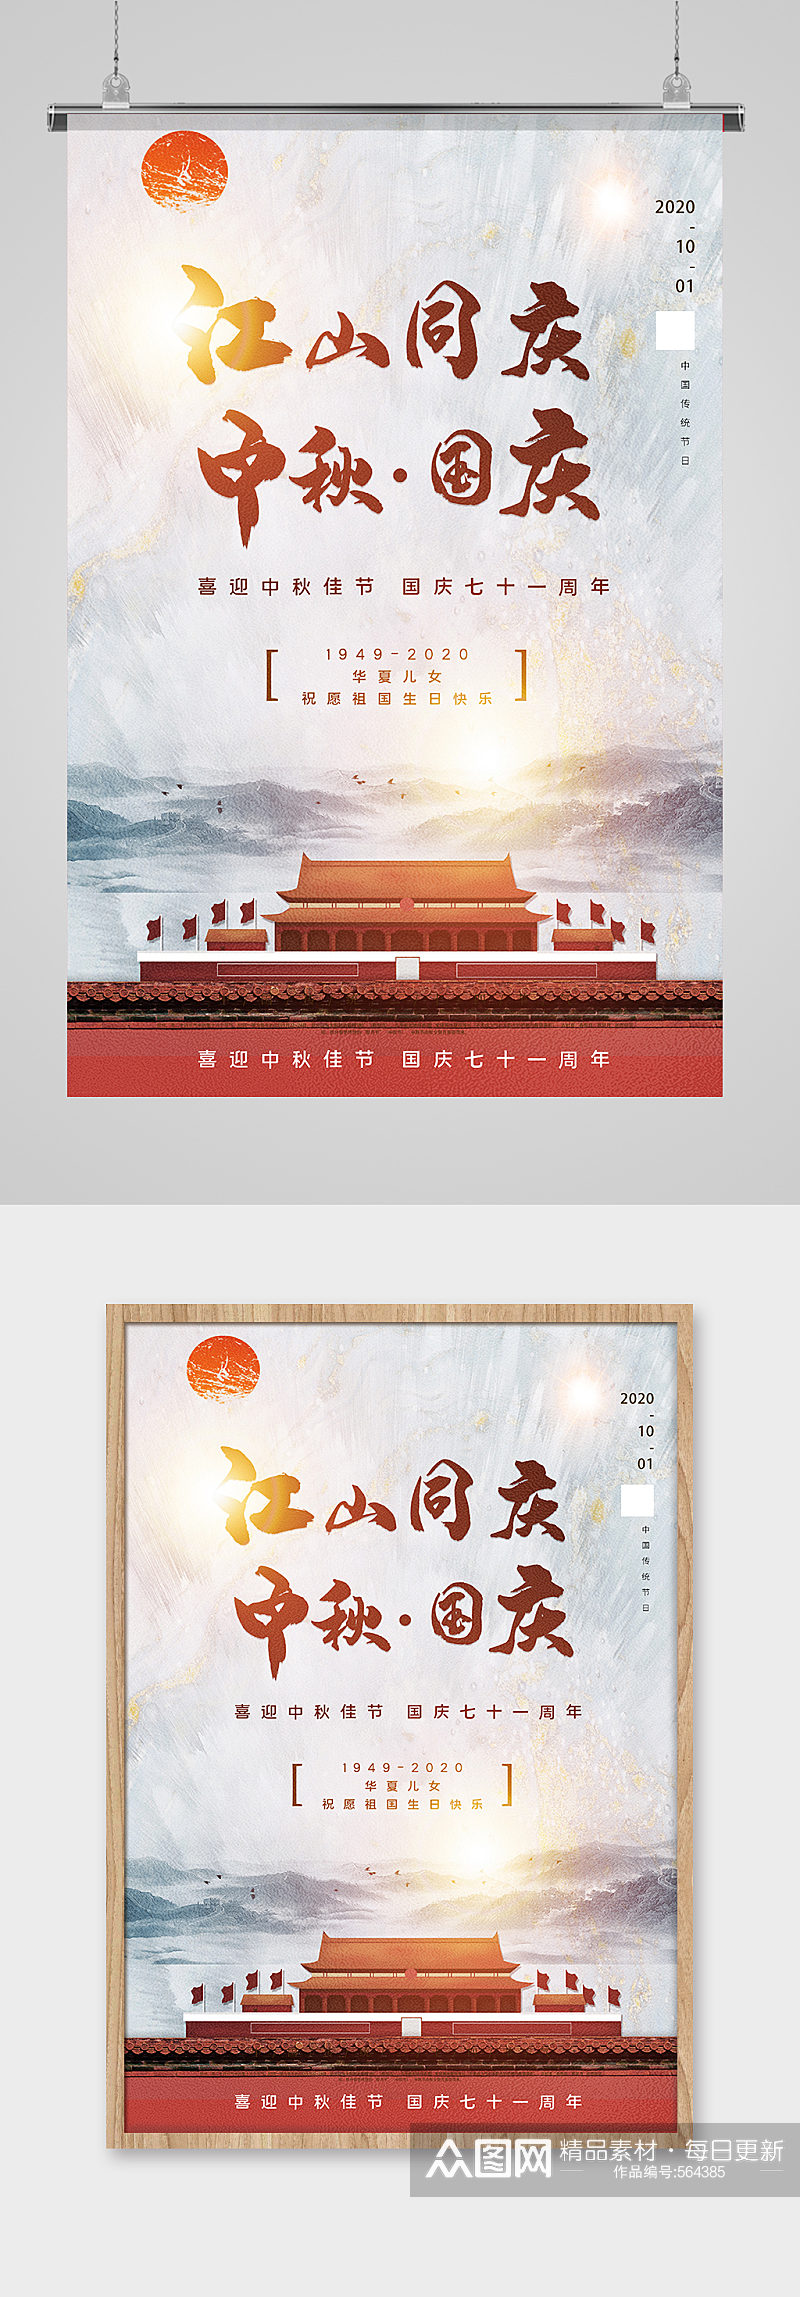 喜迎双节中国风宣传海报素材